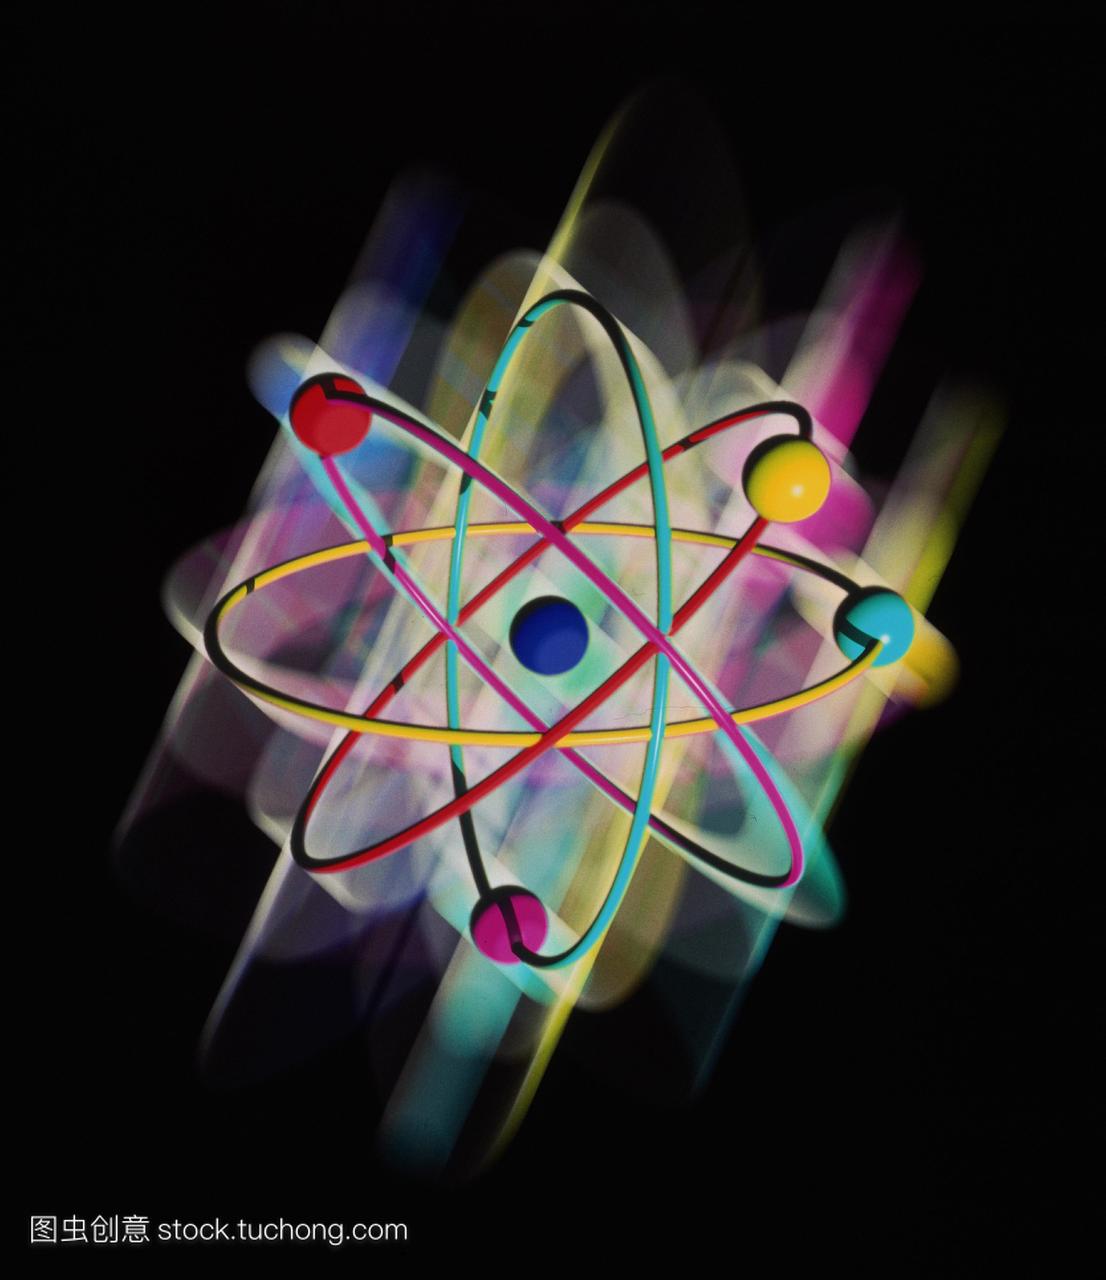 原子结构。电脑绘图代表单个原子的铍象征。这